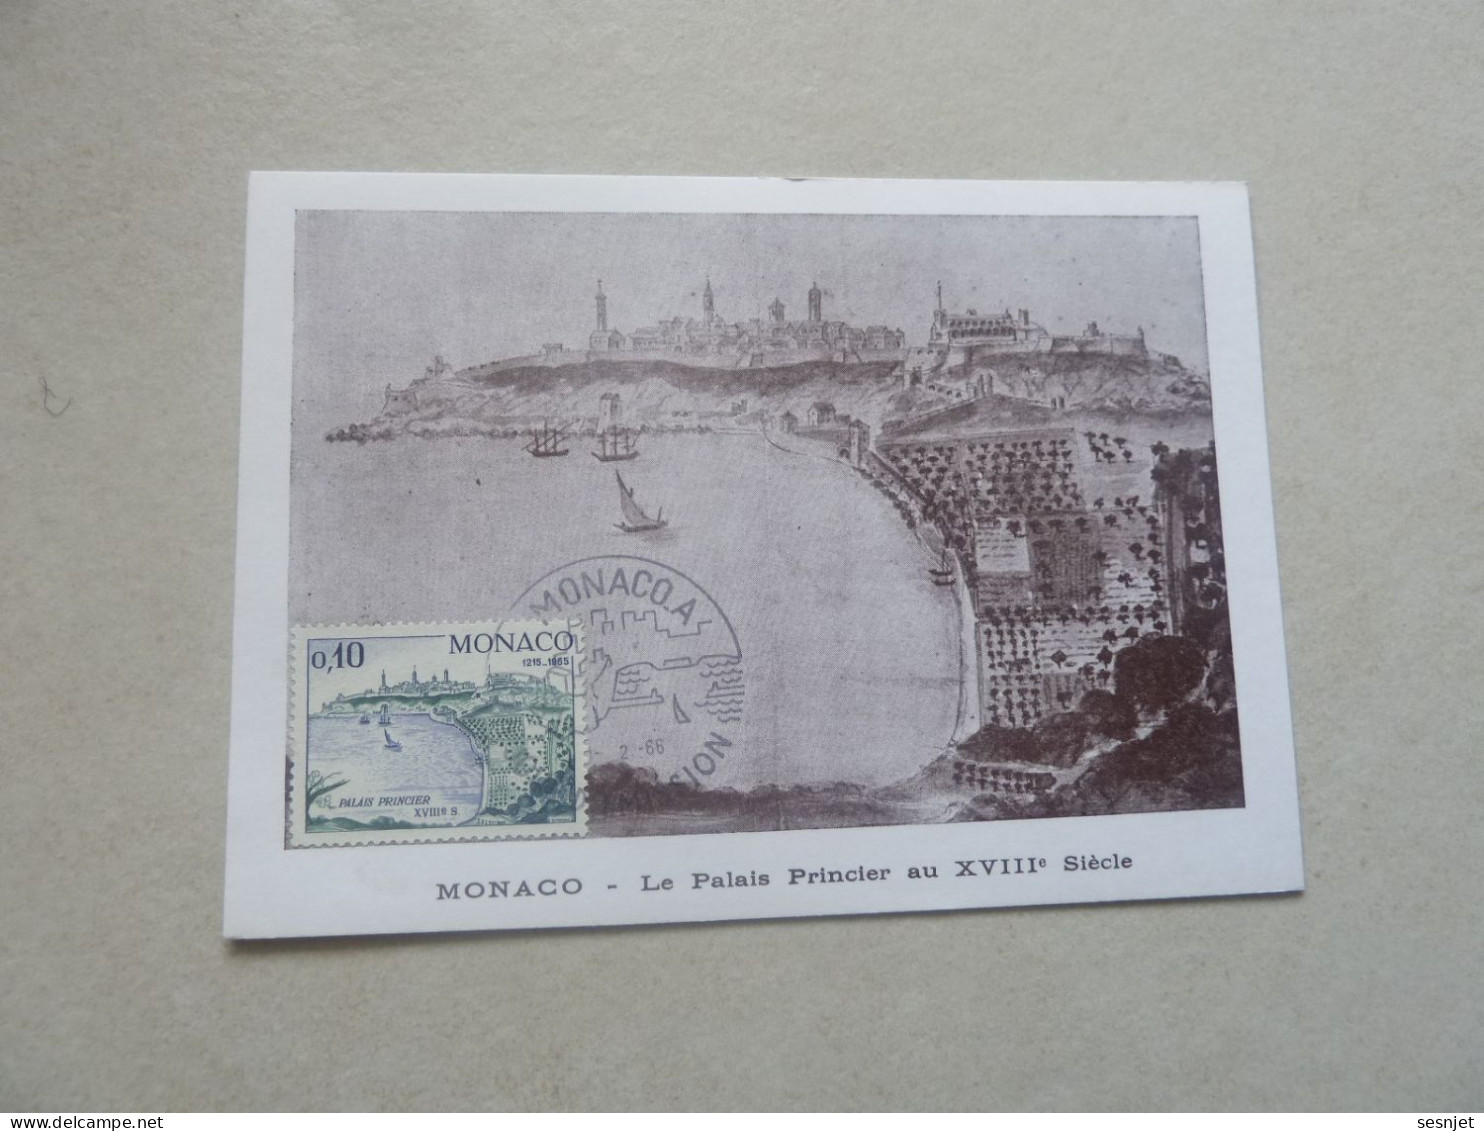 Monaco - Le Palais Au 18ème Siècle - 12c. - Yt 677 - Carte Premier Jour D'Emission - Année 1966 - - Maximumkaarten